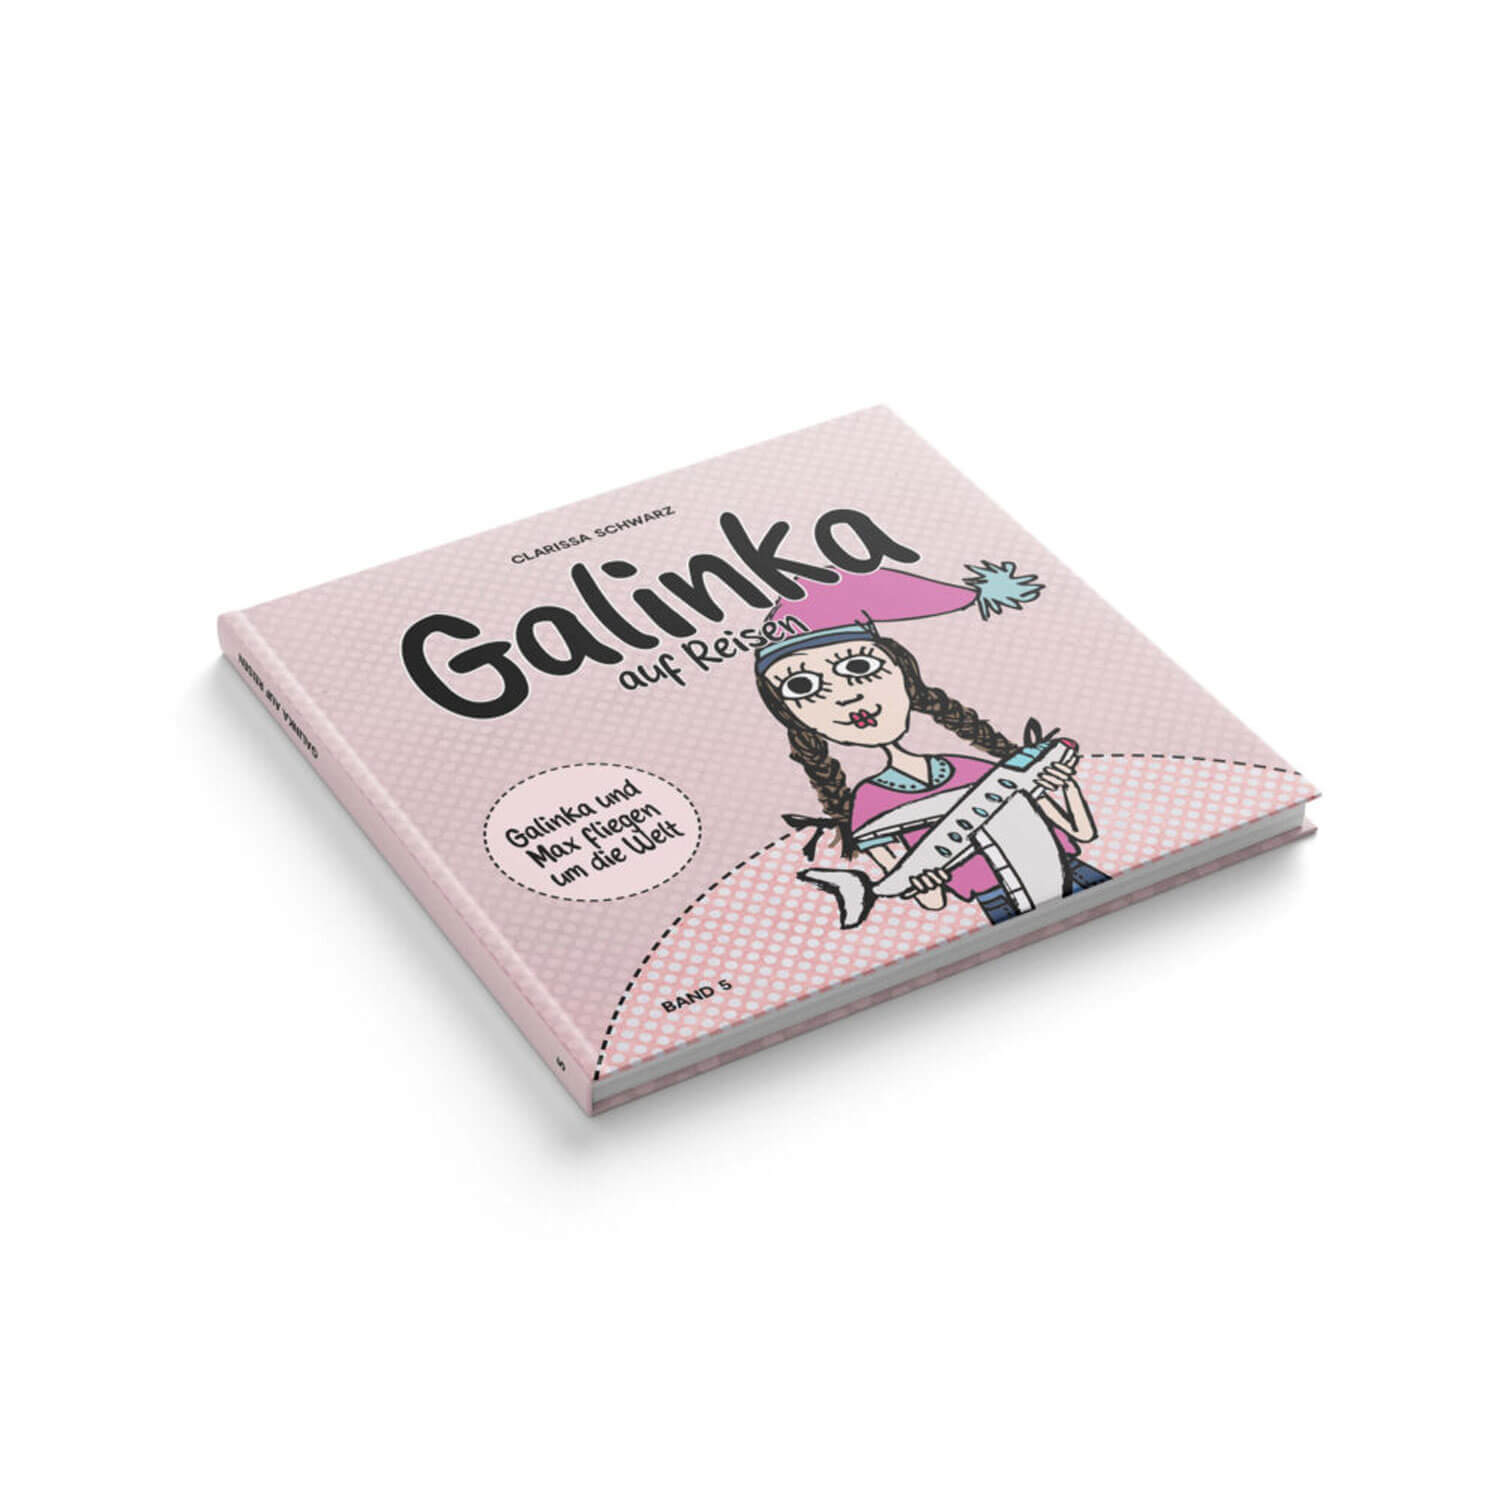 Galinka auf Reisen, Kinderbuch